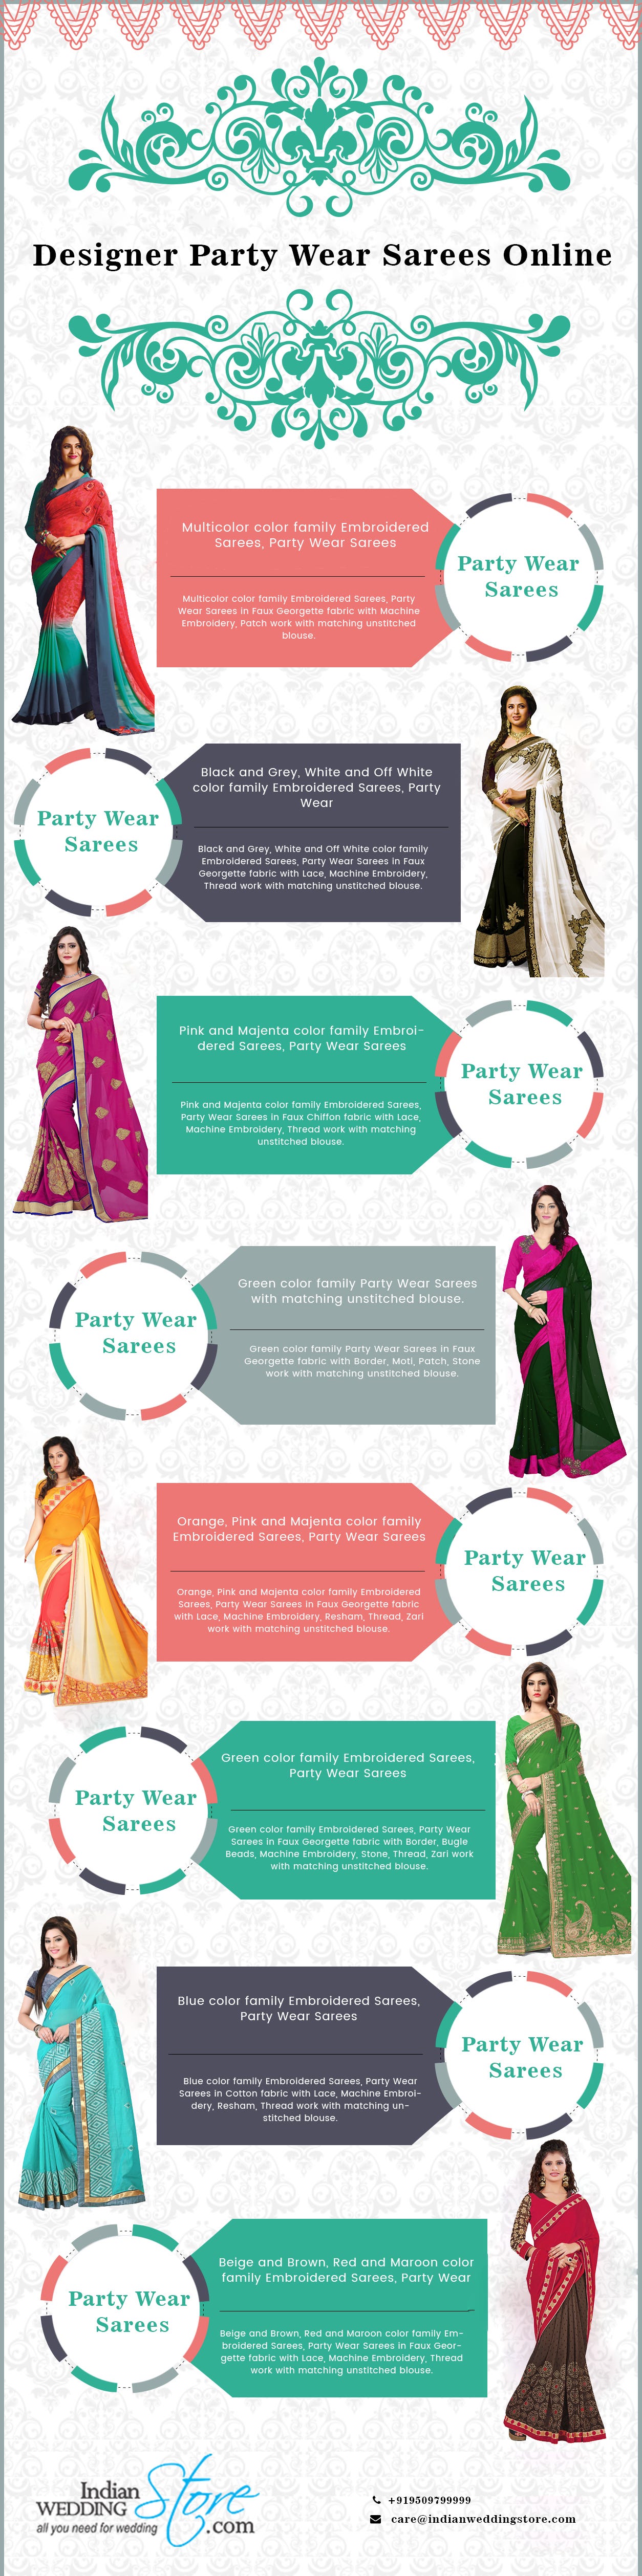 wedding wear sarees online